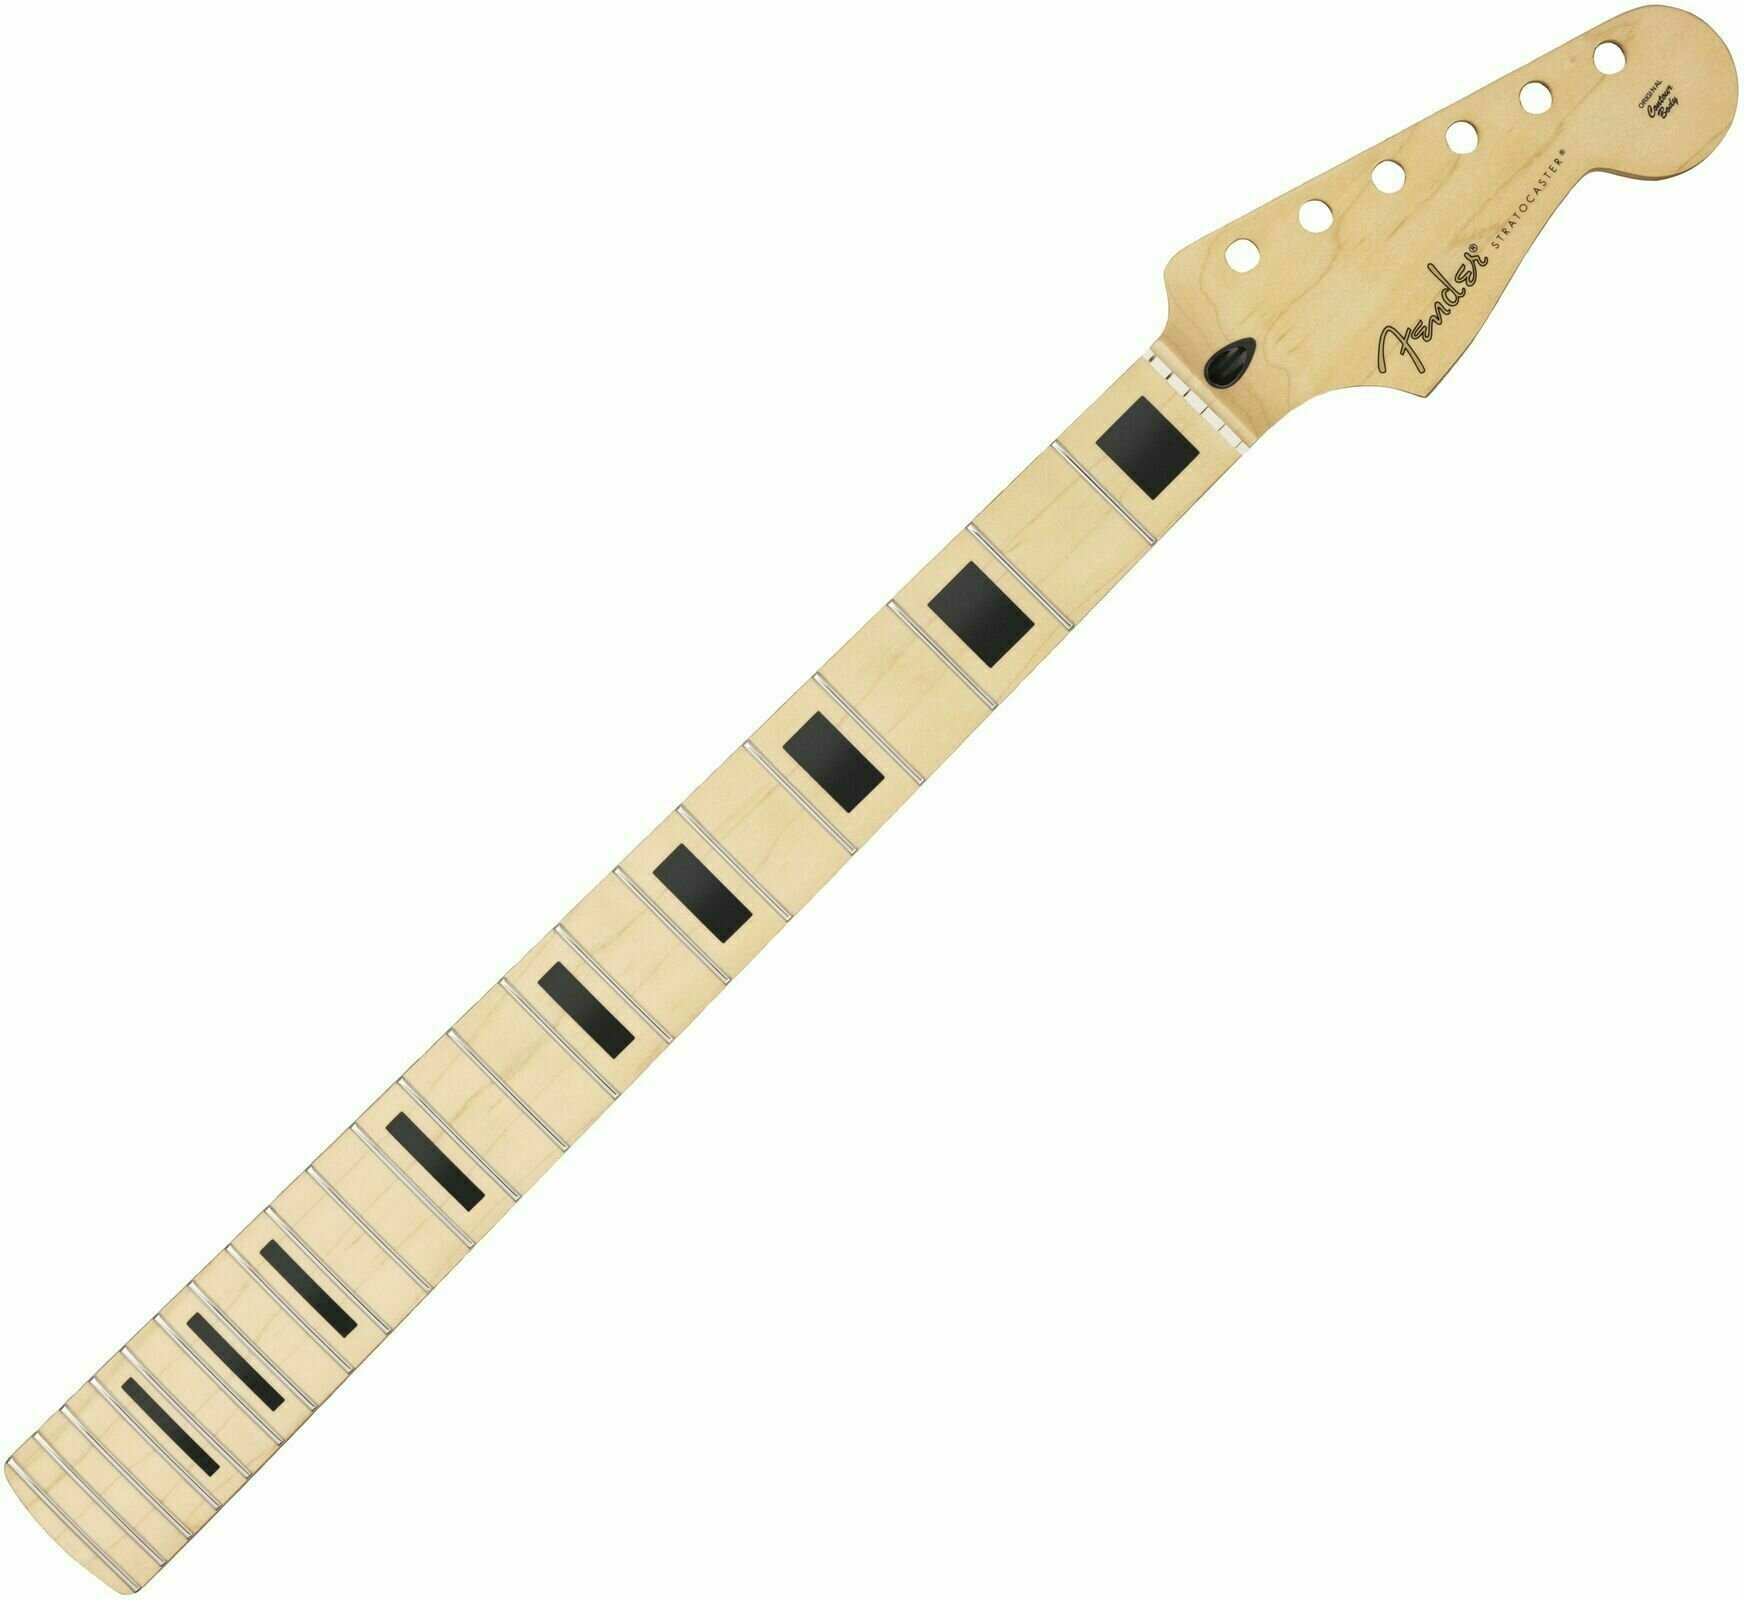 Hals für Gitarre Fender Player Series Stratocaster Neck Block Inlays Maple 22 Ahorn Hals für Gitarre